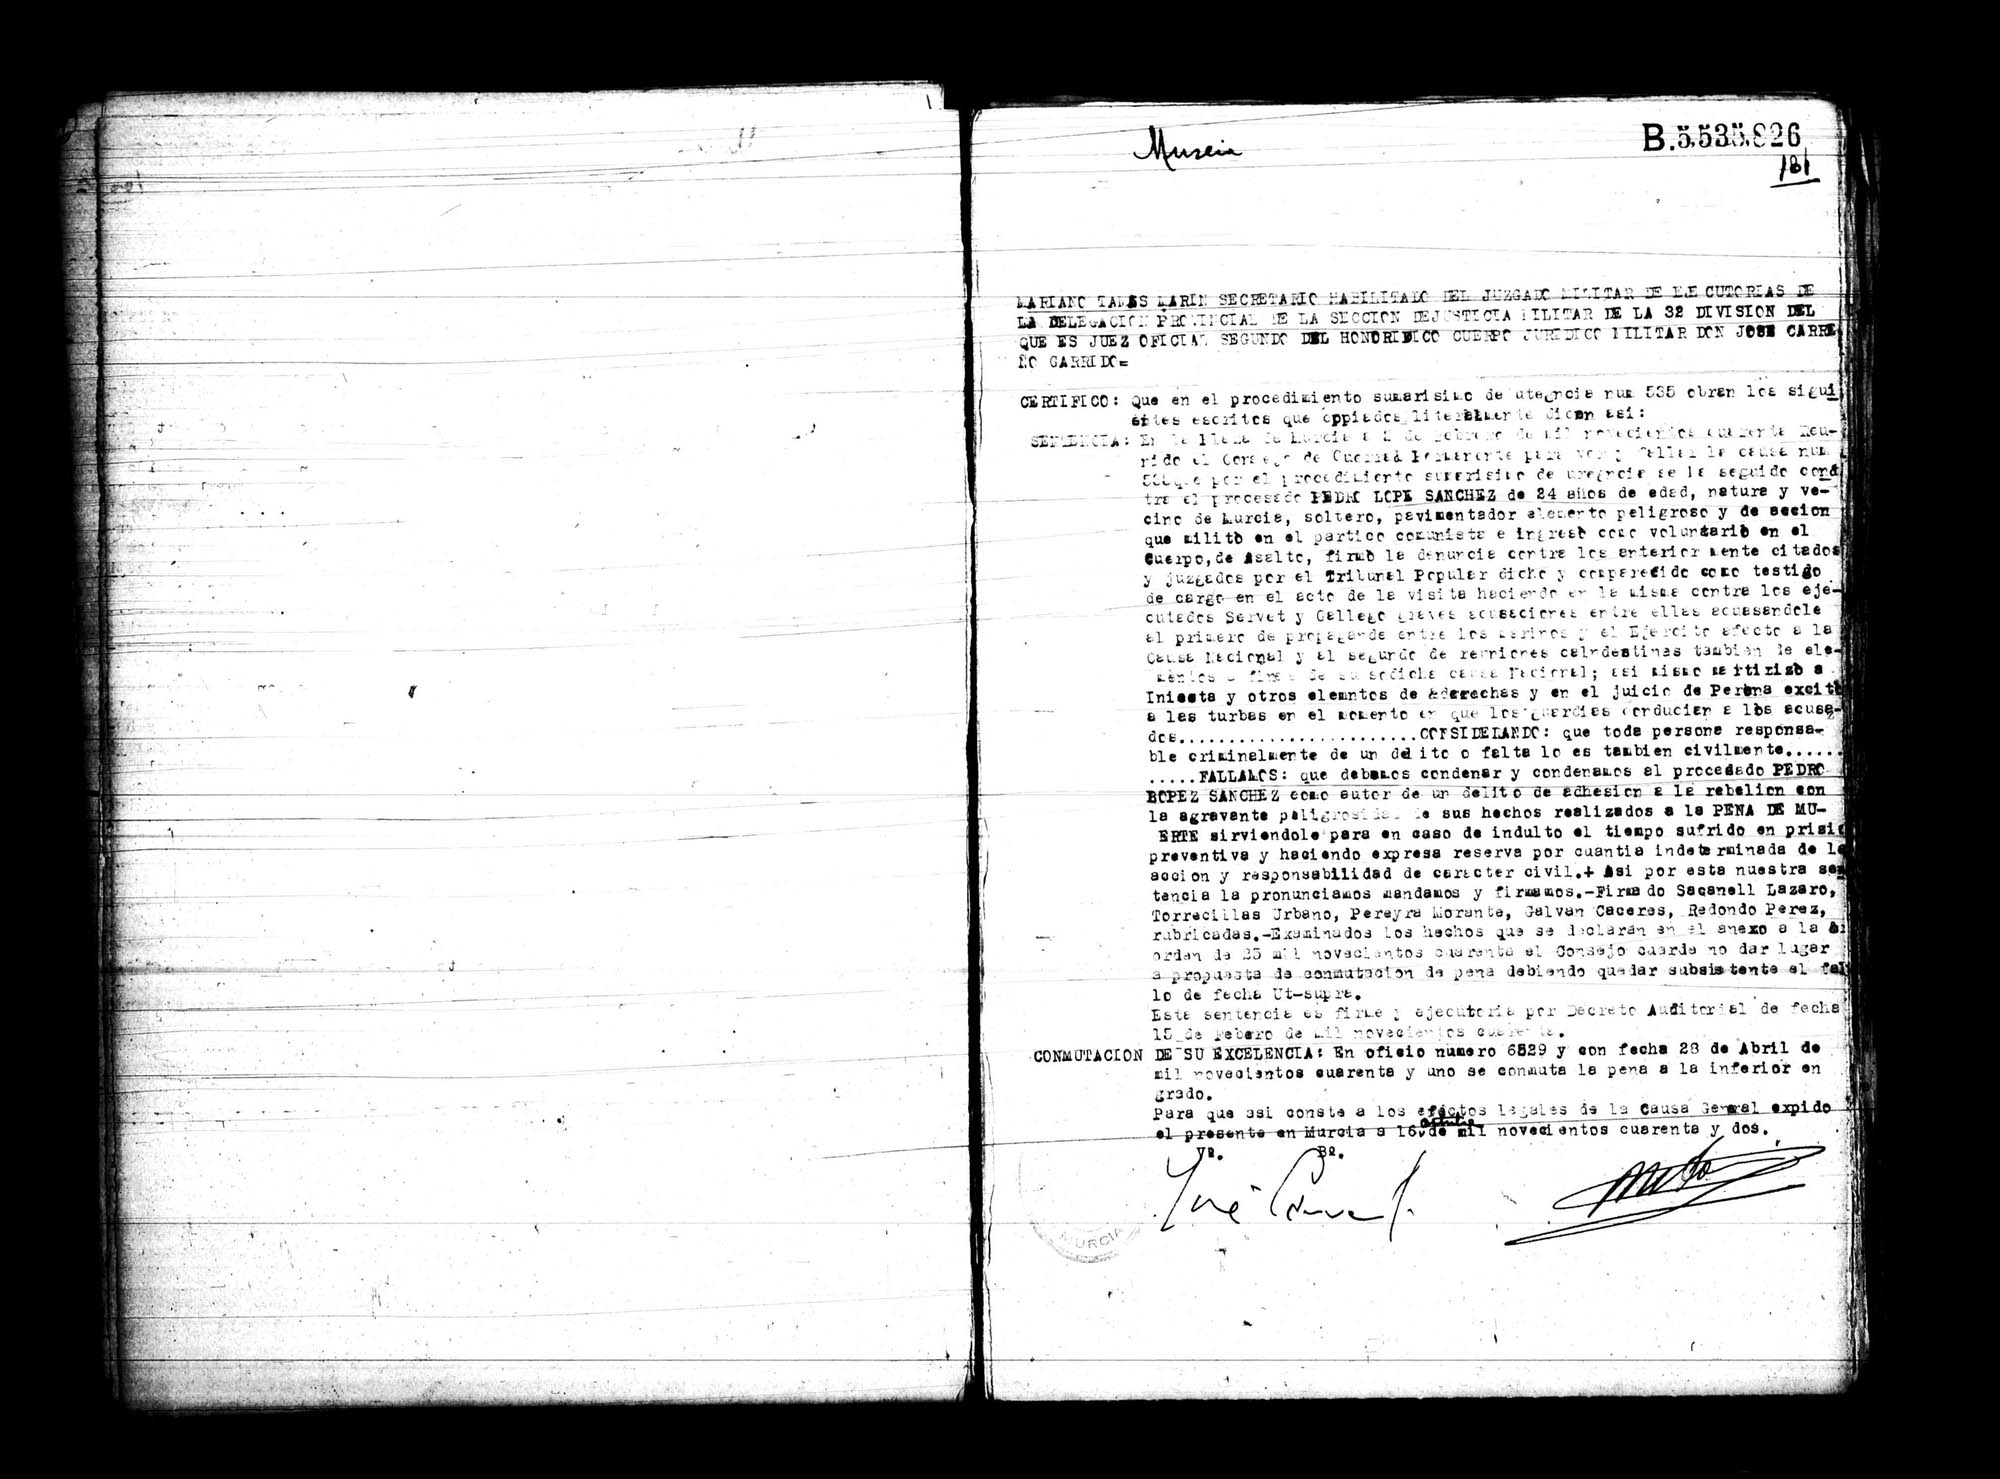 Certificado de la sentencia pronunciada contra Pedro López Sánchez, causa 535, el 16 de octubre de 1942 en Murcia.